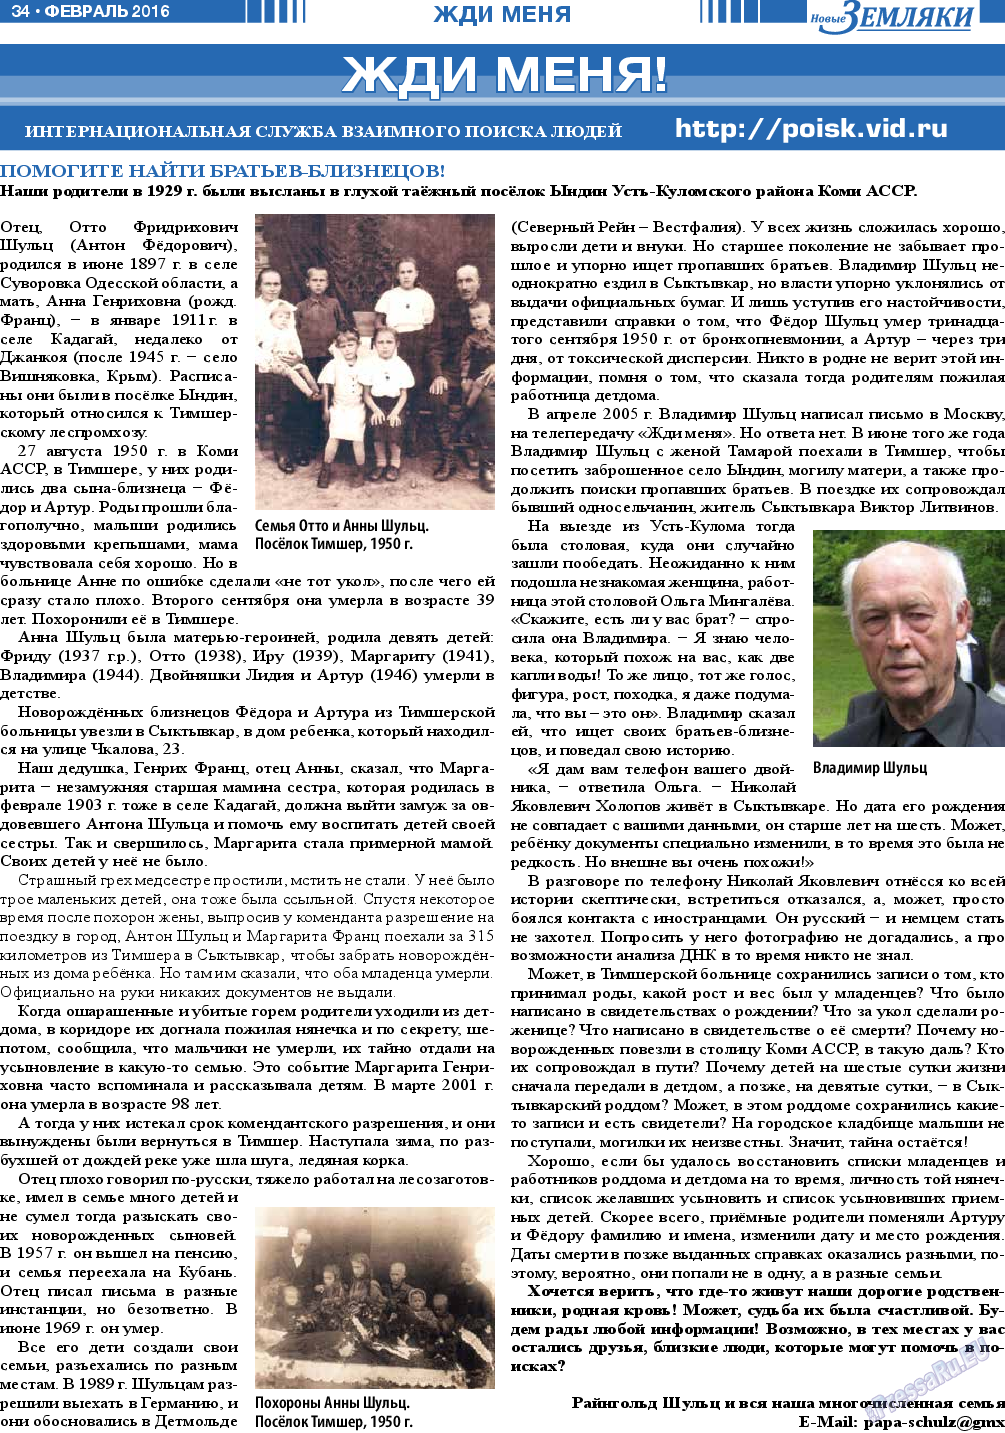 Новые Земляки, газета. 2016 №2 стр.34